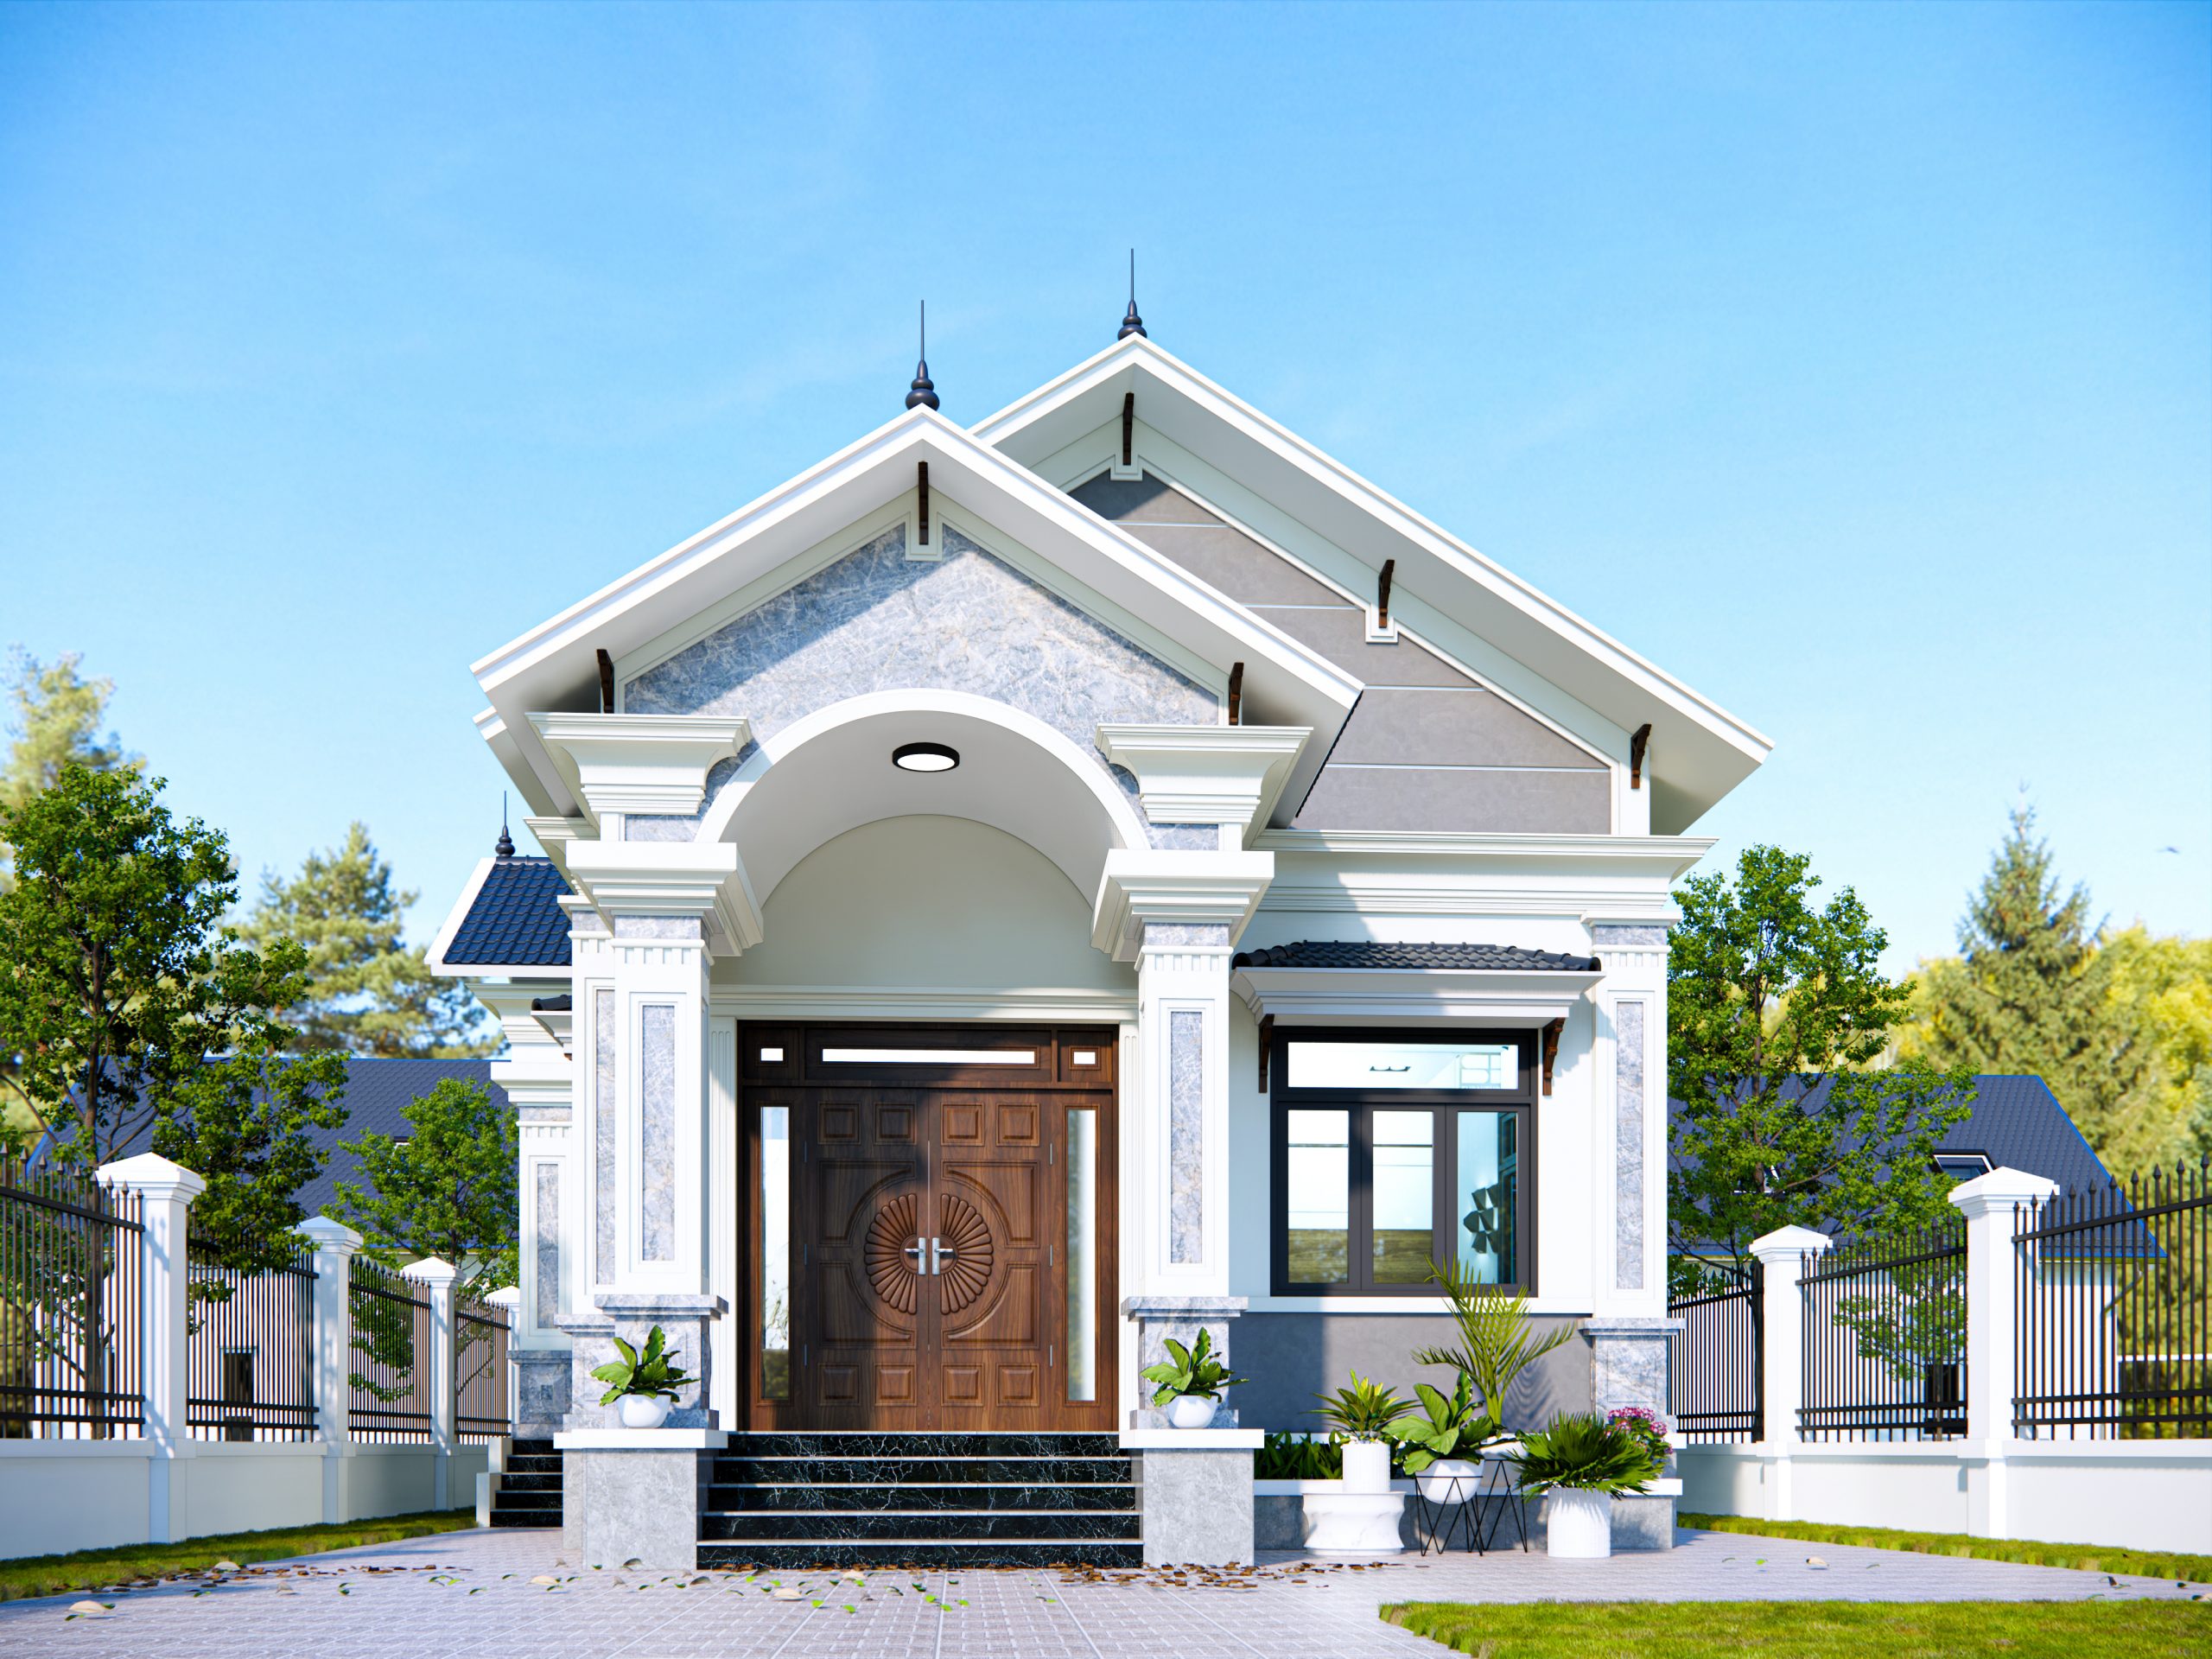 Thiết kế phòng thờ phải đảm bảo tính phong thủy, hợp với đất xây nhà và mệnh của gia chủ